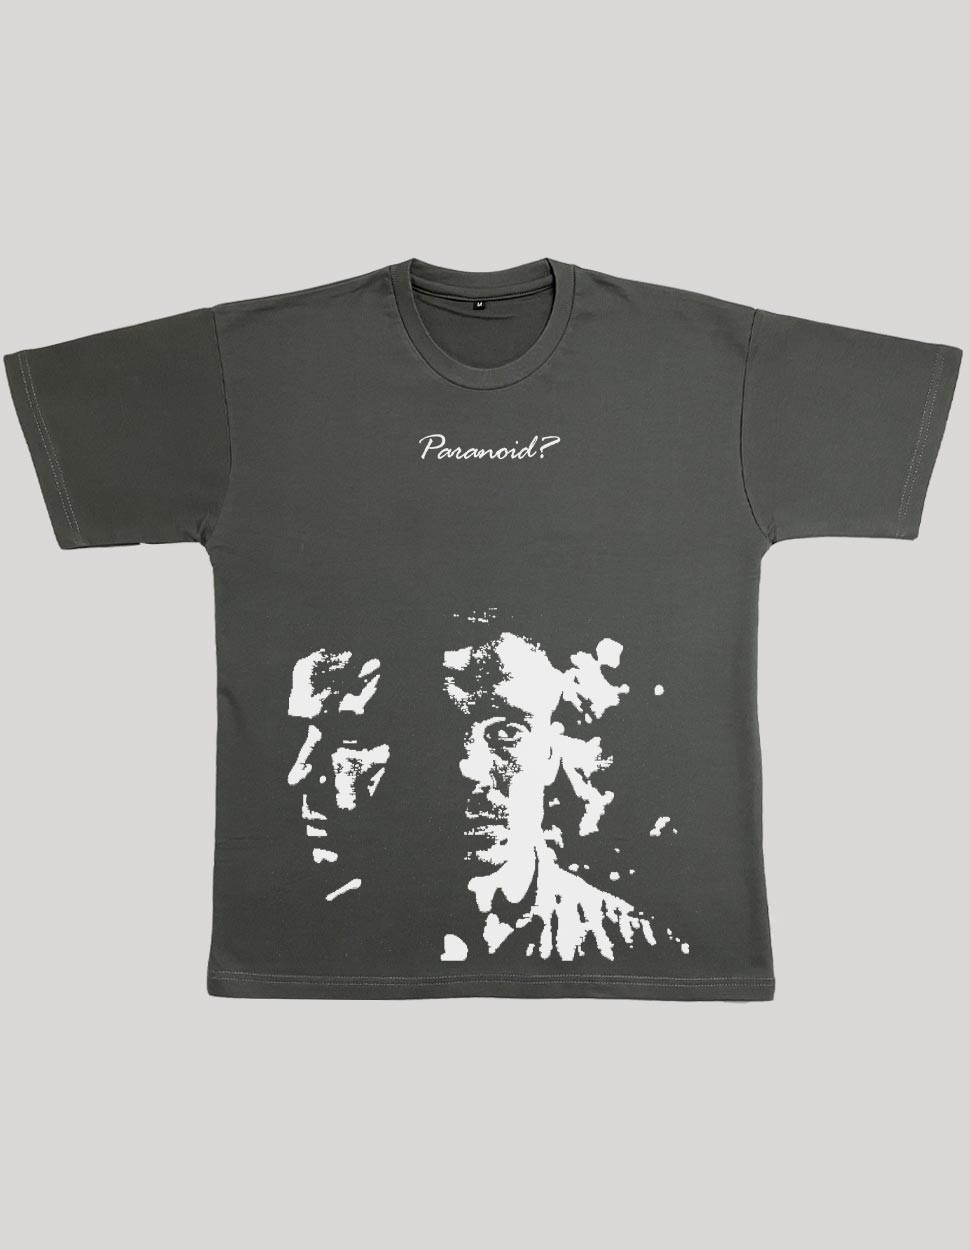 Paranoid TerryCotton T-Shirt